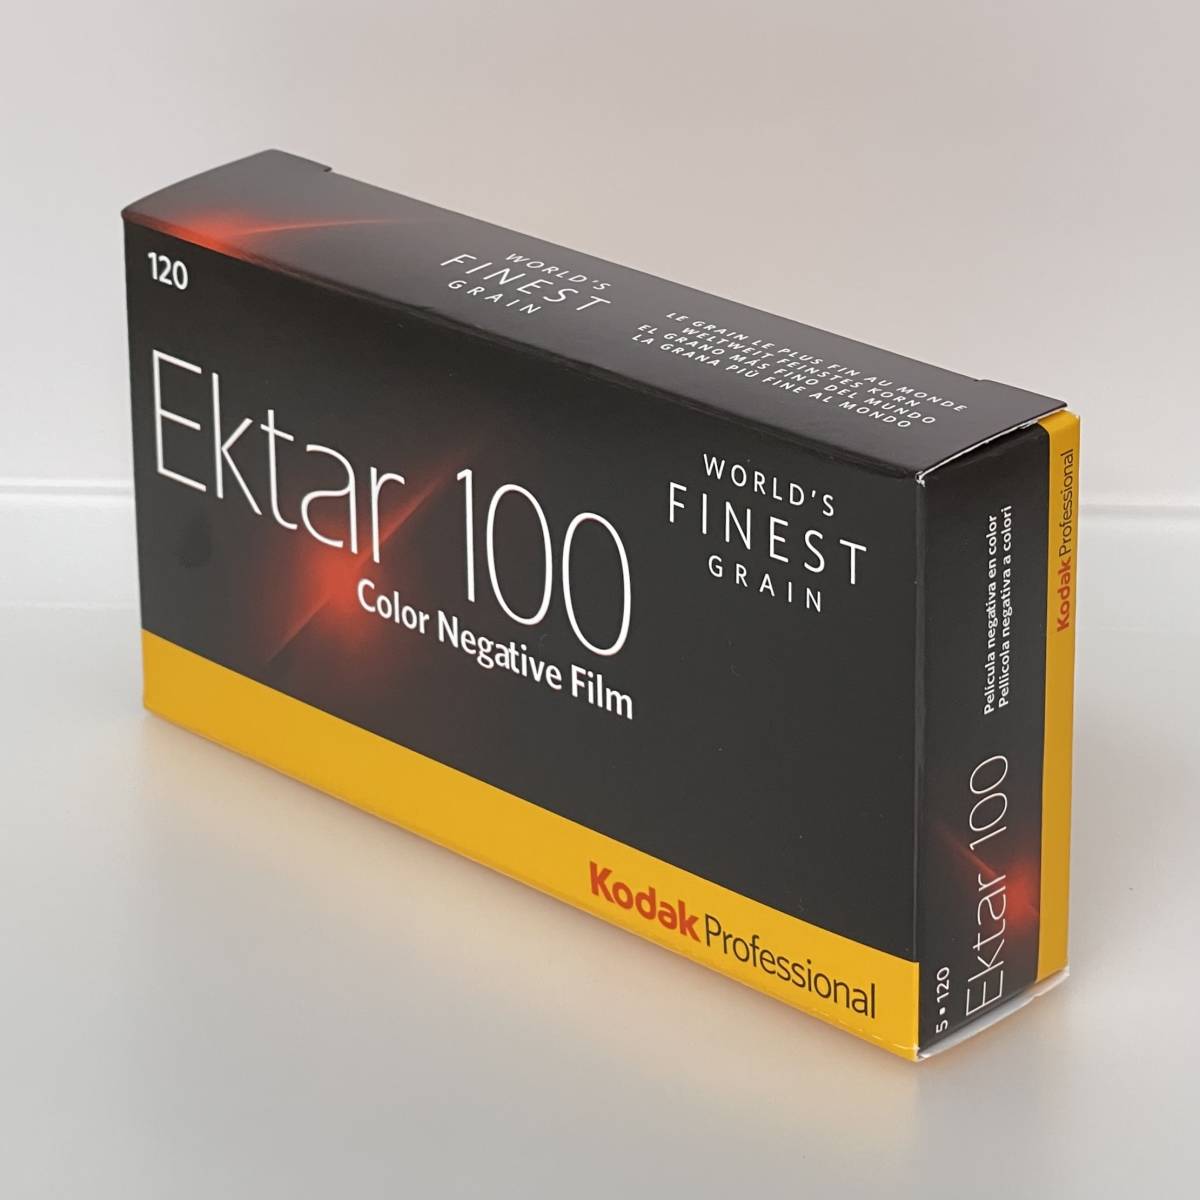 製品の割引セール  5本パック 120 Ektar（エクター）100 Kodak コダック その他